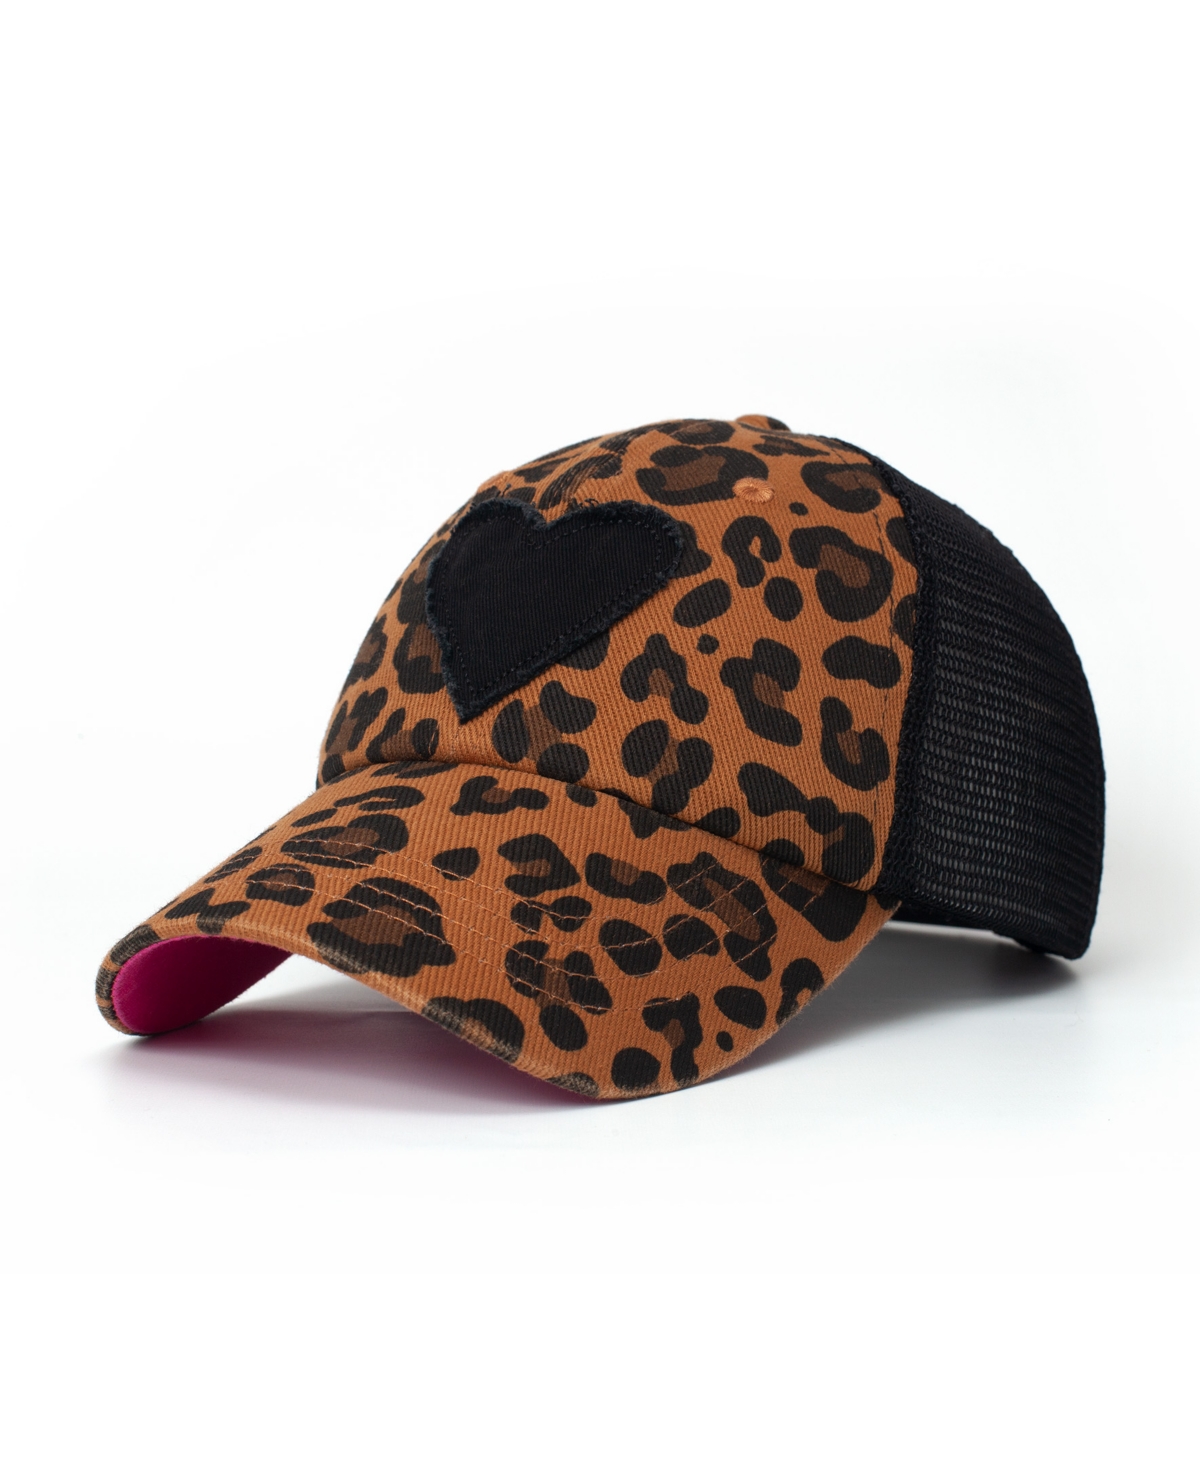 Leopard Lady Women's Adjustable Snap Back Mesh Leopard Print with Heart Trucker Hat - Leopard